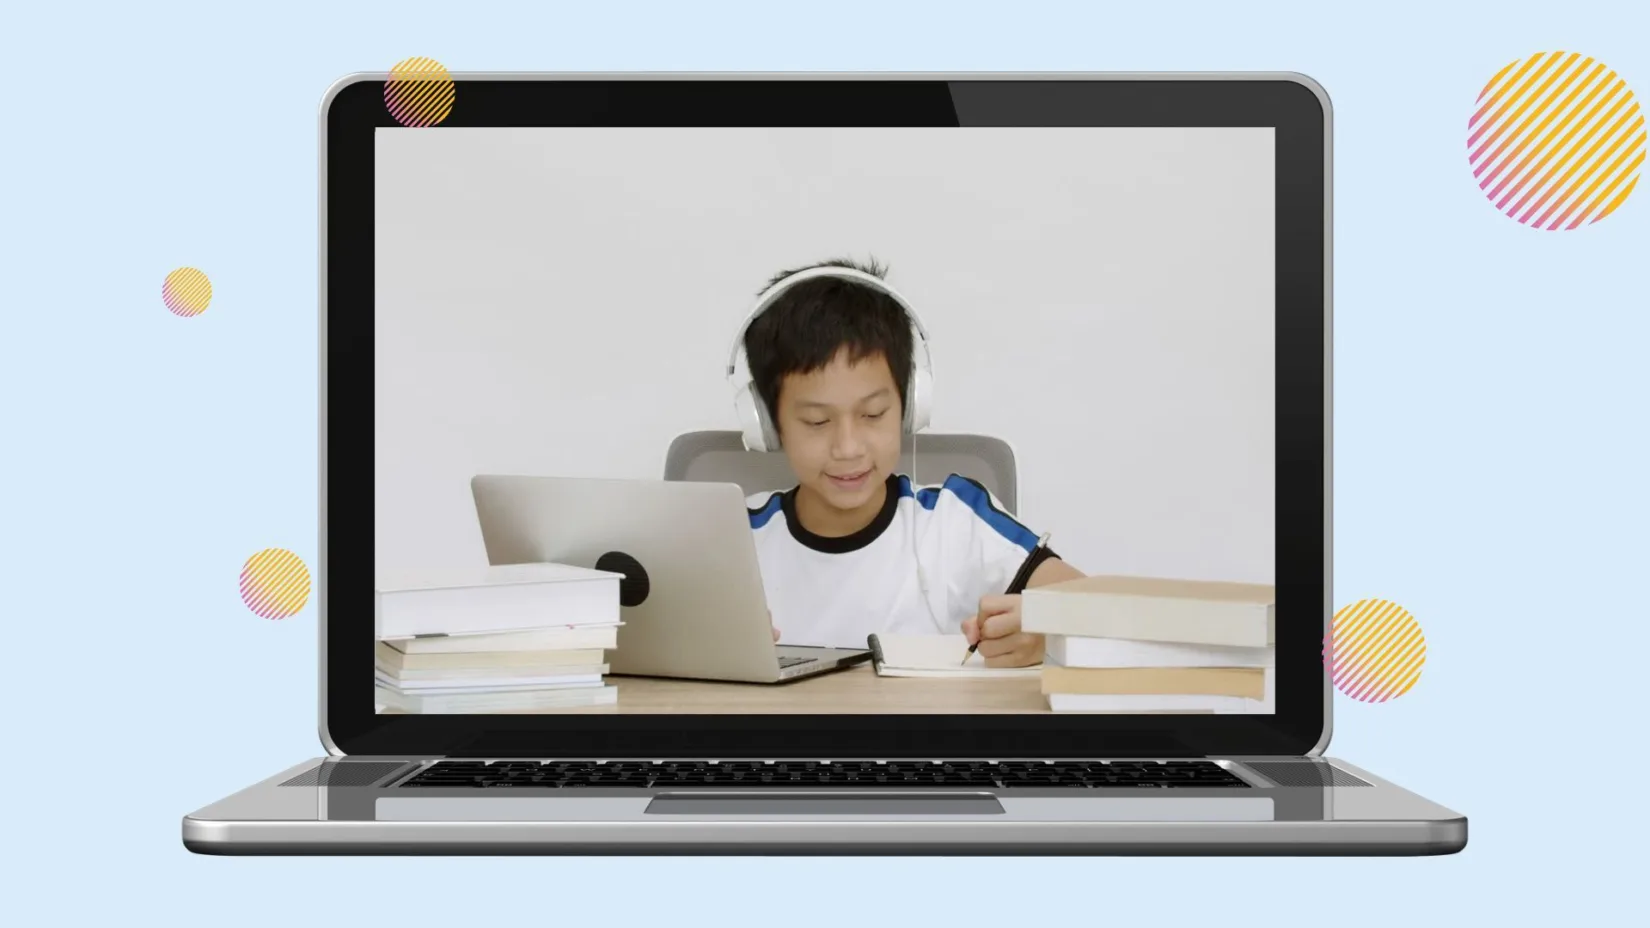 En laptop med et bilde av en gutt som sitter foran en laptop